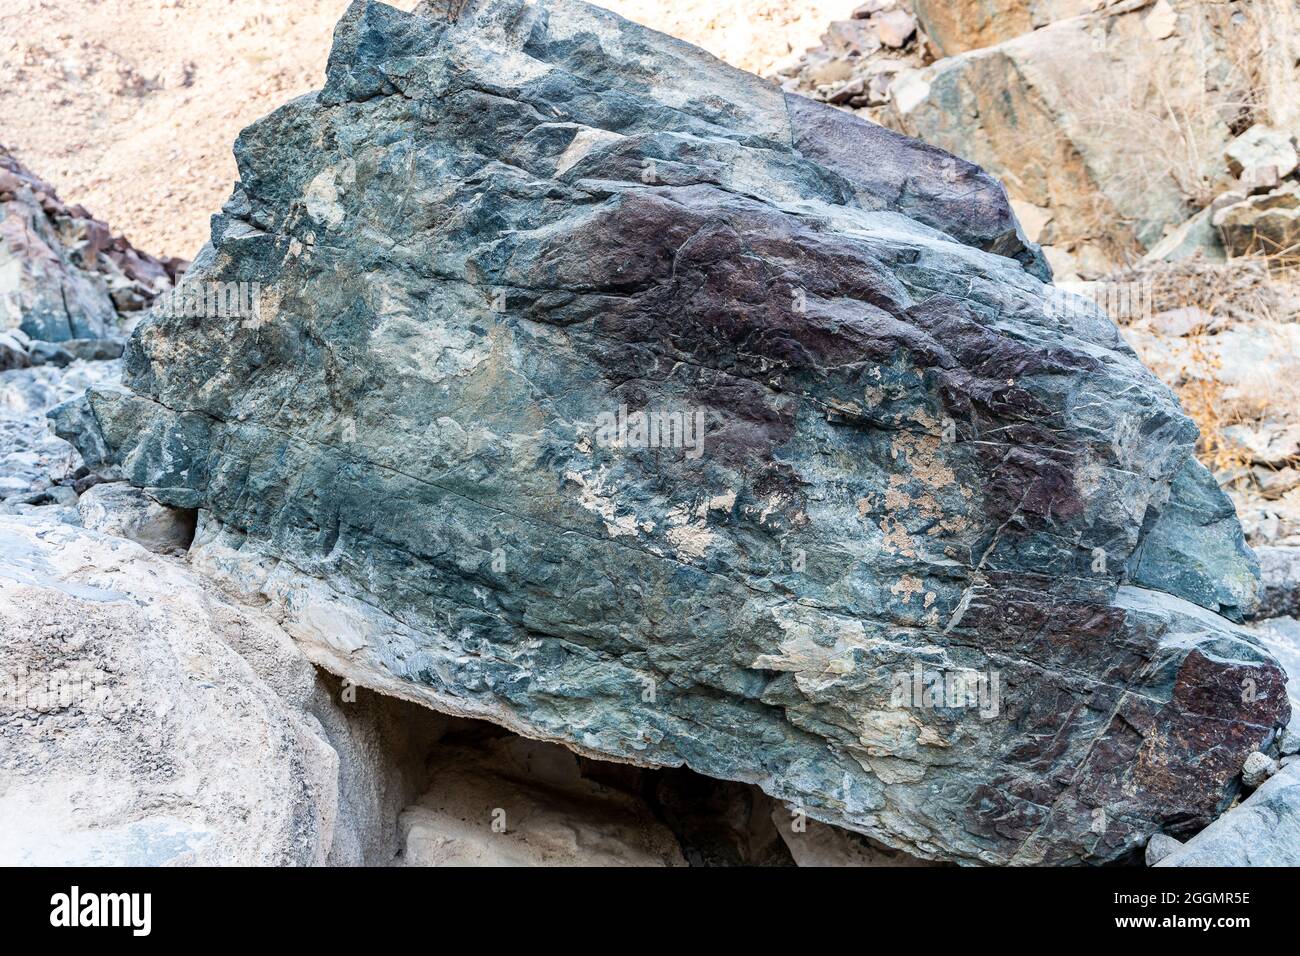 Rohes Erz aus Kupfer, grünen Steinen und kupferhaltigen Gesteinen im alten Bergbaugebiet, in den Bergen des Gebirges von Hagar, Vereinigte Arabische Emirate. Stockfoto